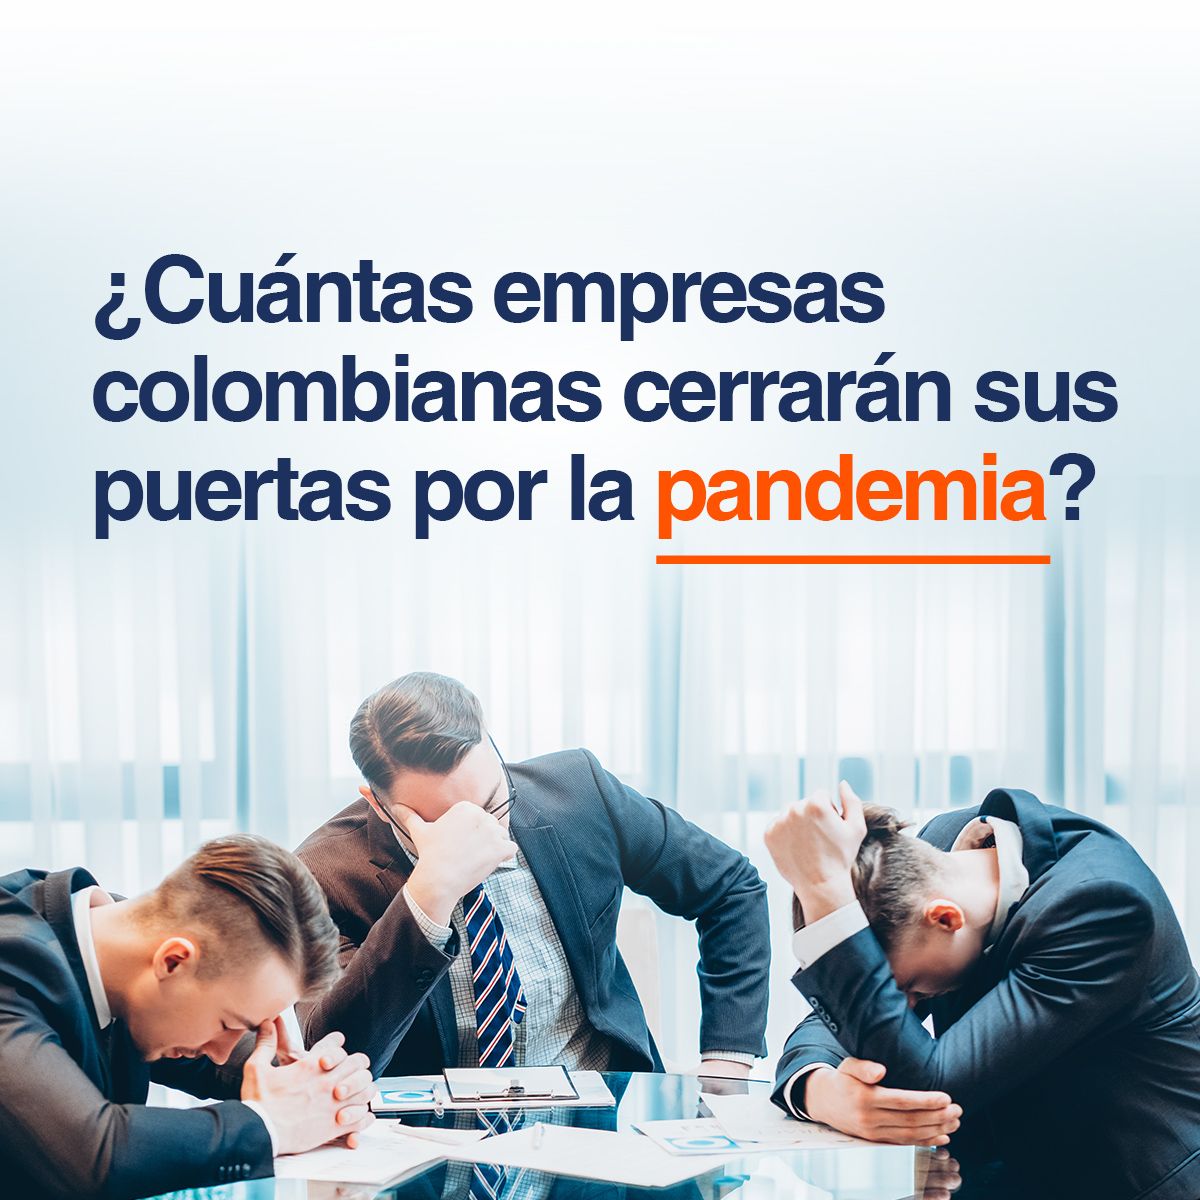 ¿Cuántas empresas colombianas cerrarán sus puertas por la pandemia?